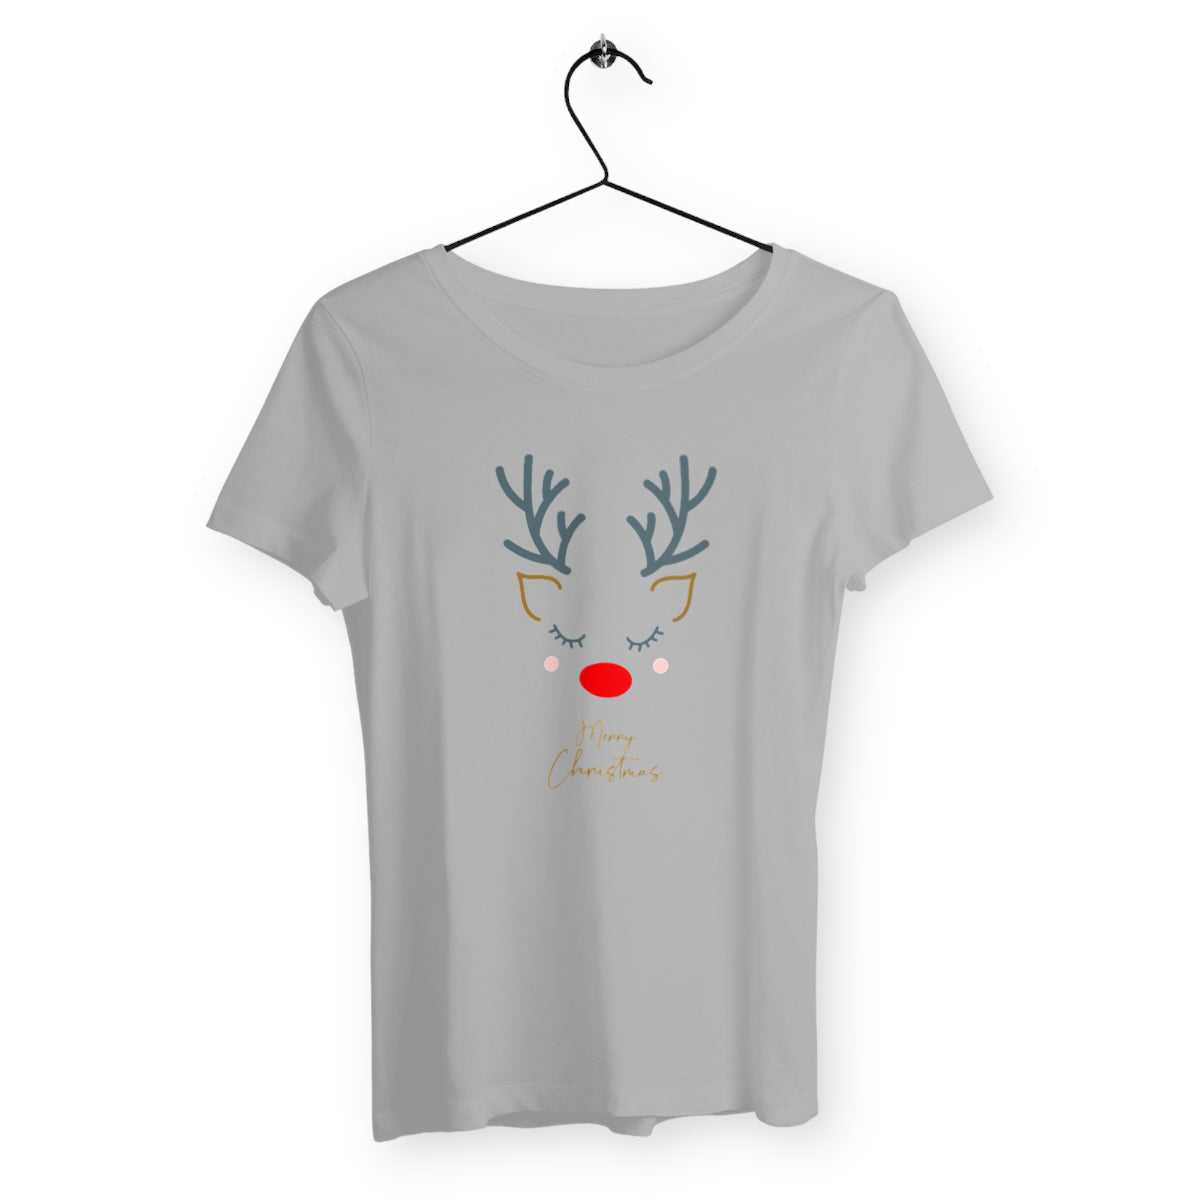 T-shirt femme merry christmas